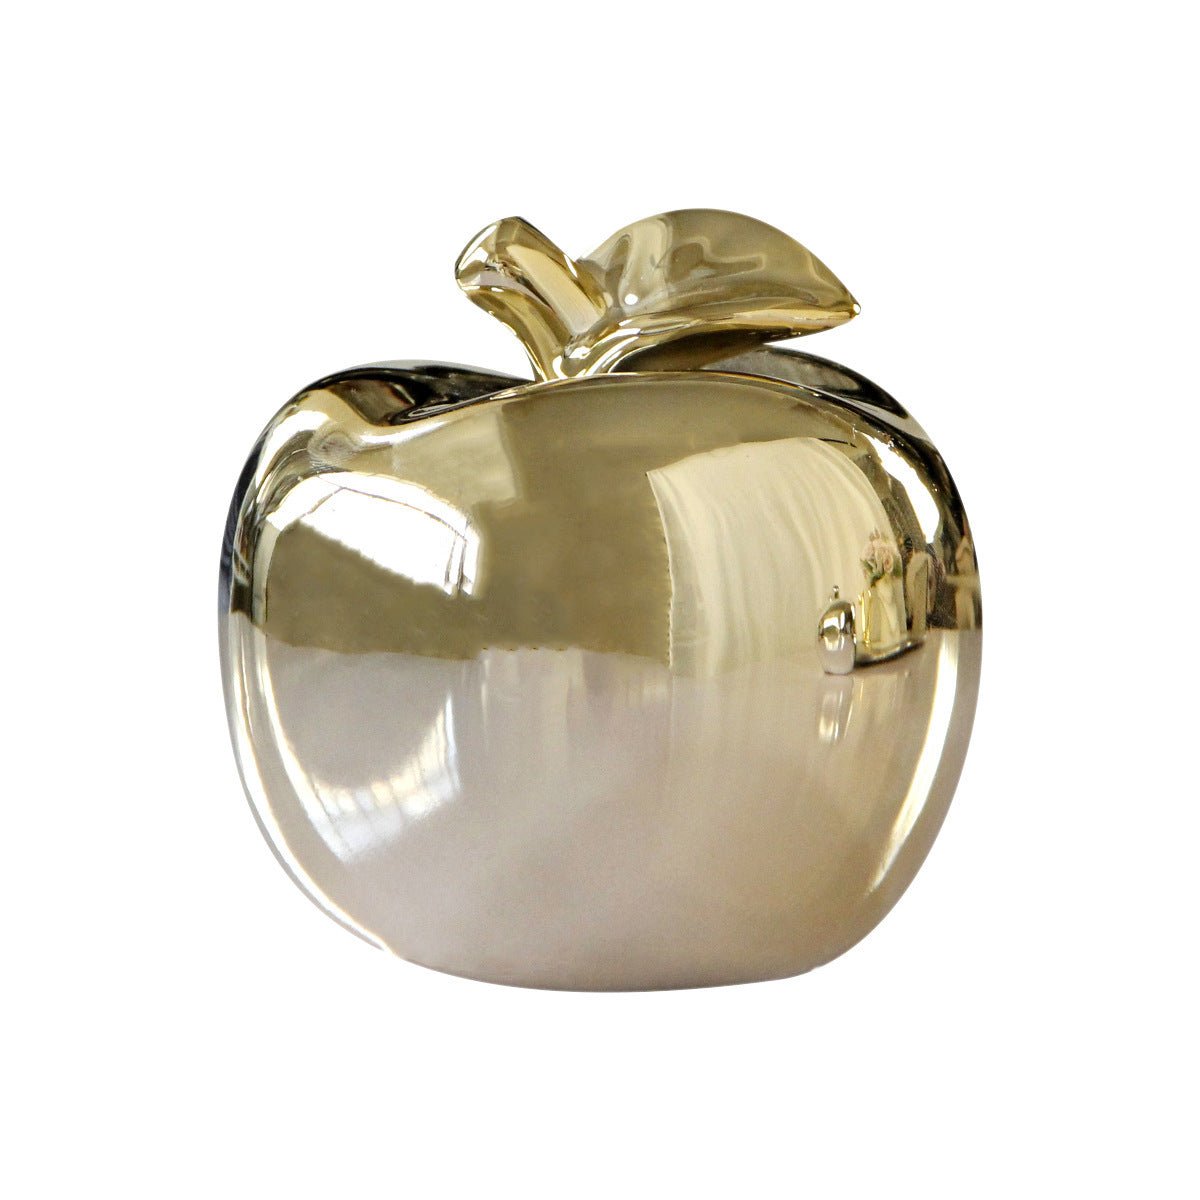 Golden Silver Apple Ceramic Ornaments - Max&Mark Home Decor